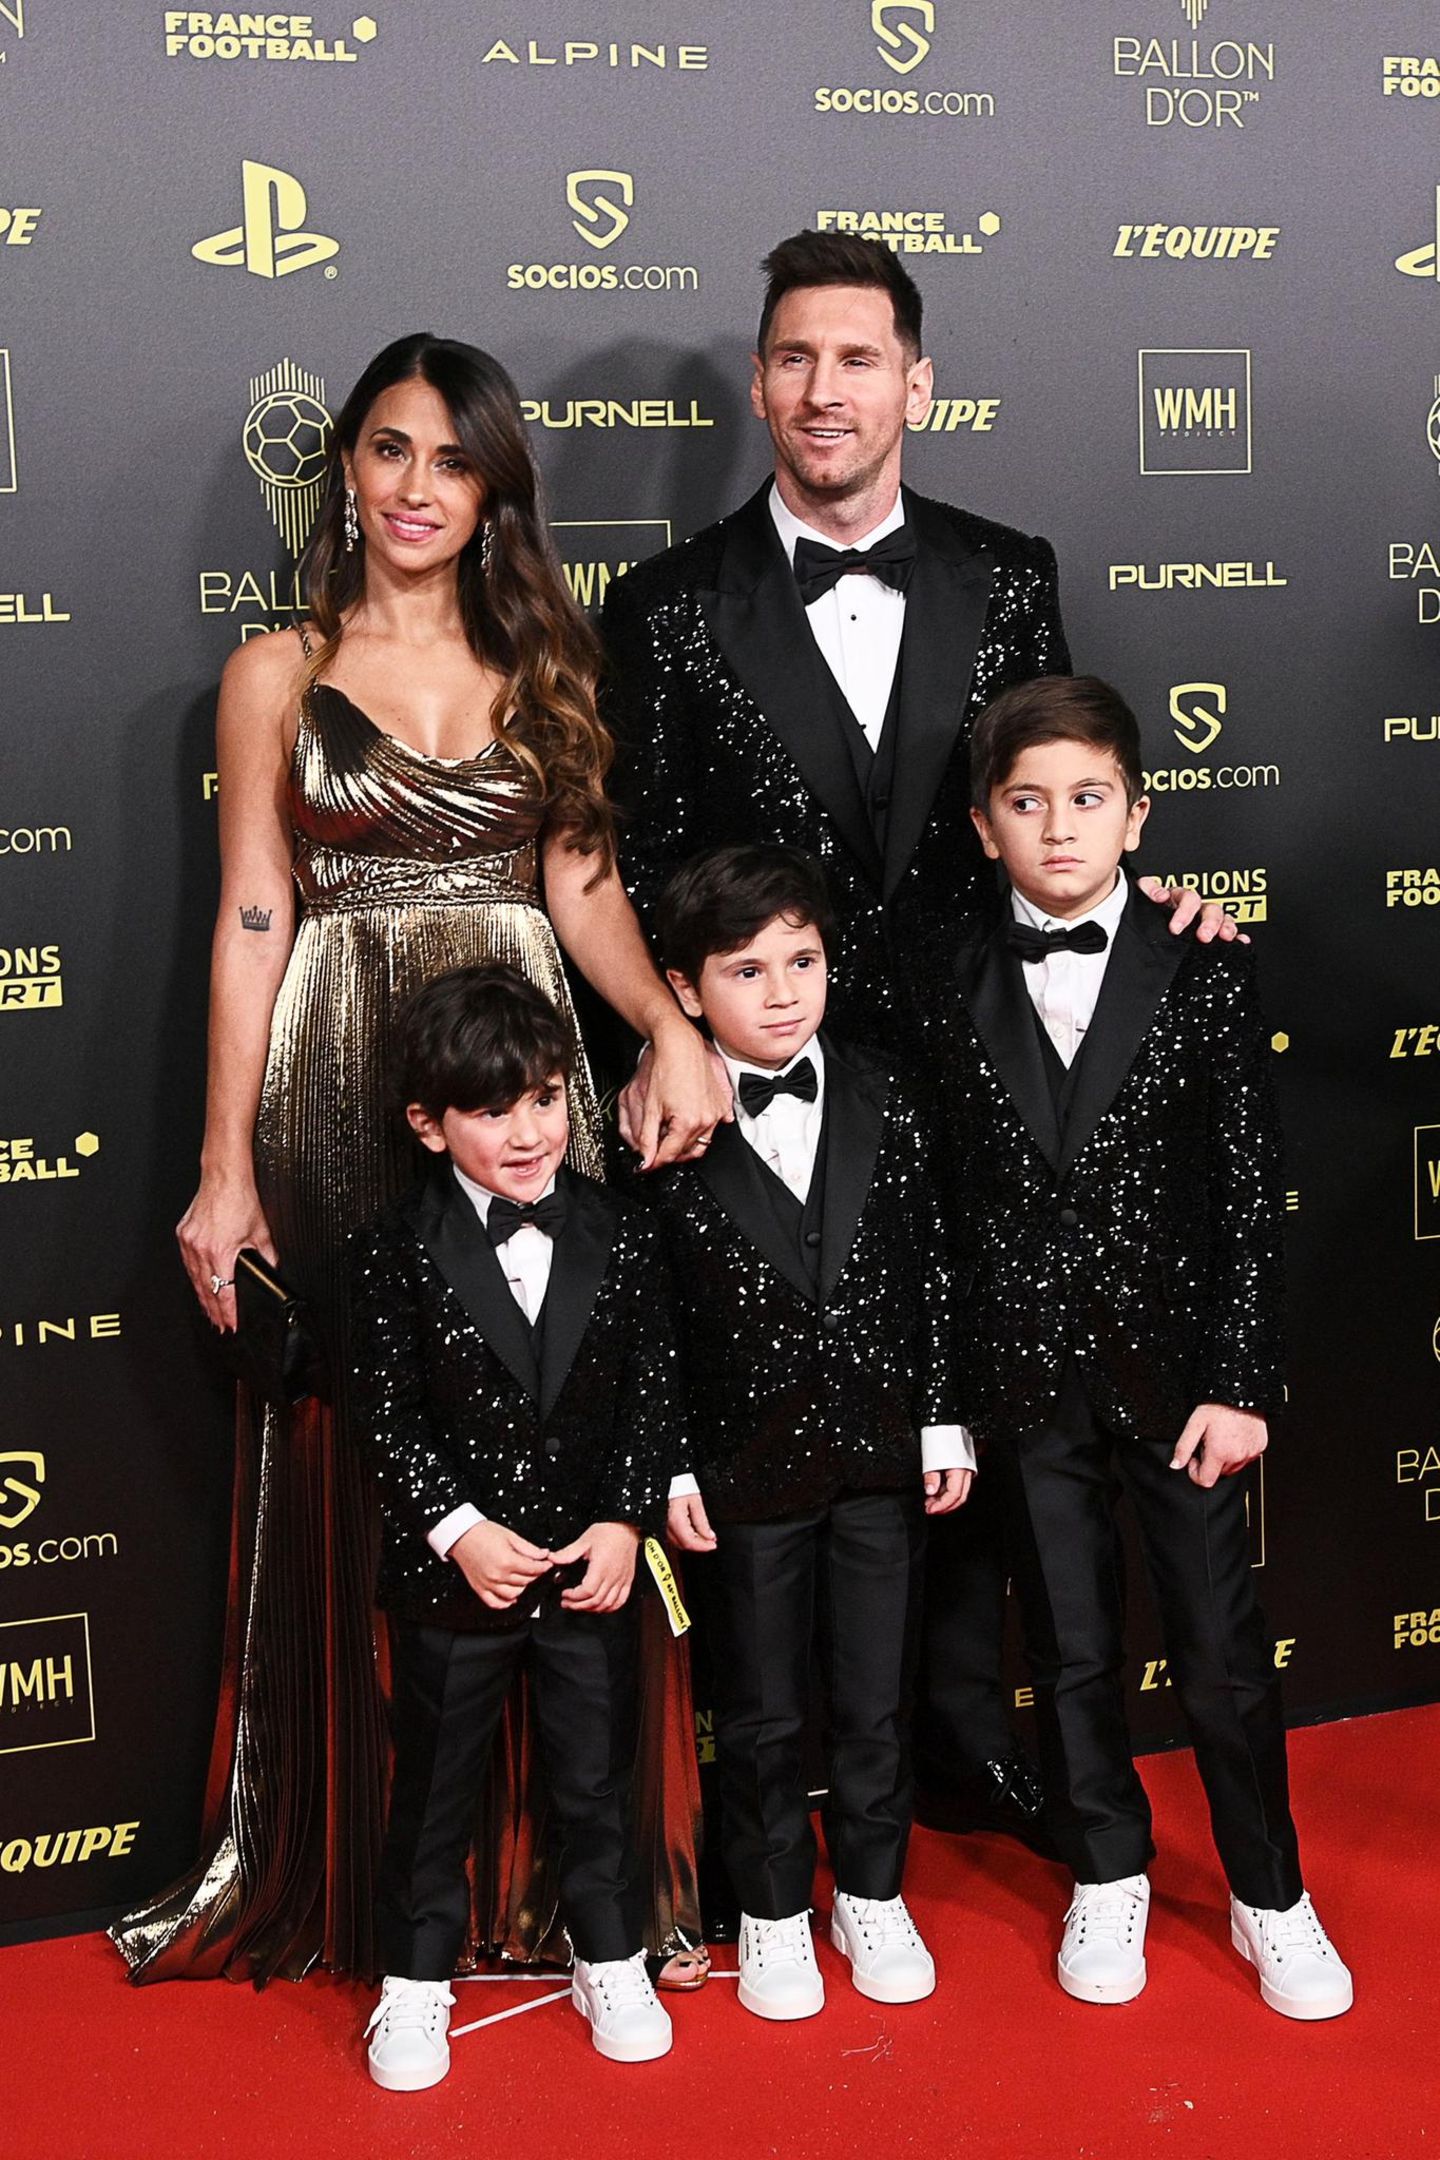 Lionel Messi erscheint mit seiner Familie bei der Preisverleihung "Ballon D'Or". Im süßen Partnerlook mit seinen Söhnen wird der Fußball-Superstar zum Highlight auf dem roten Teppich.